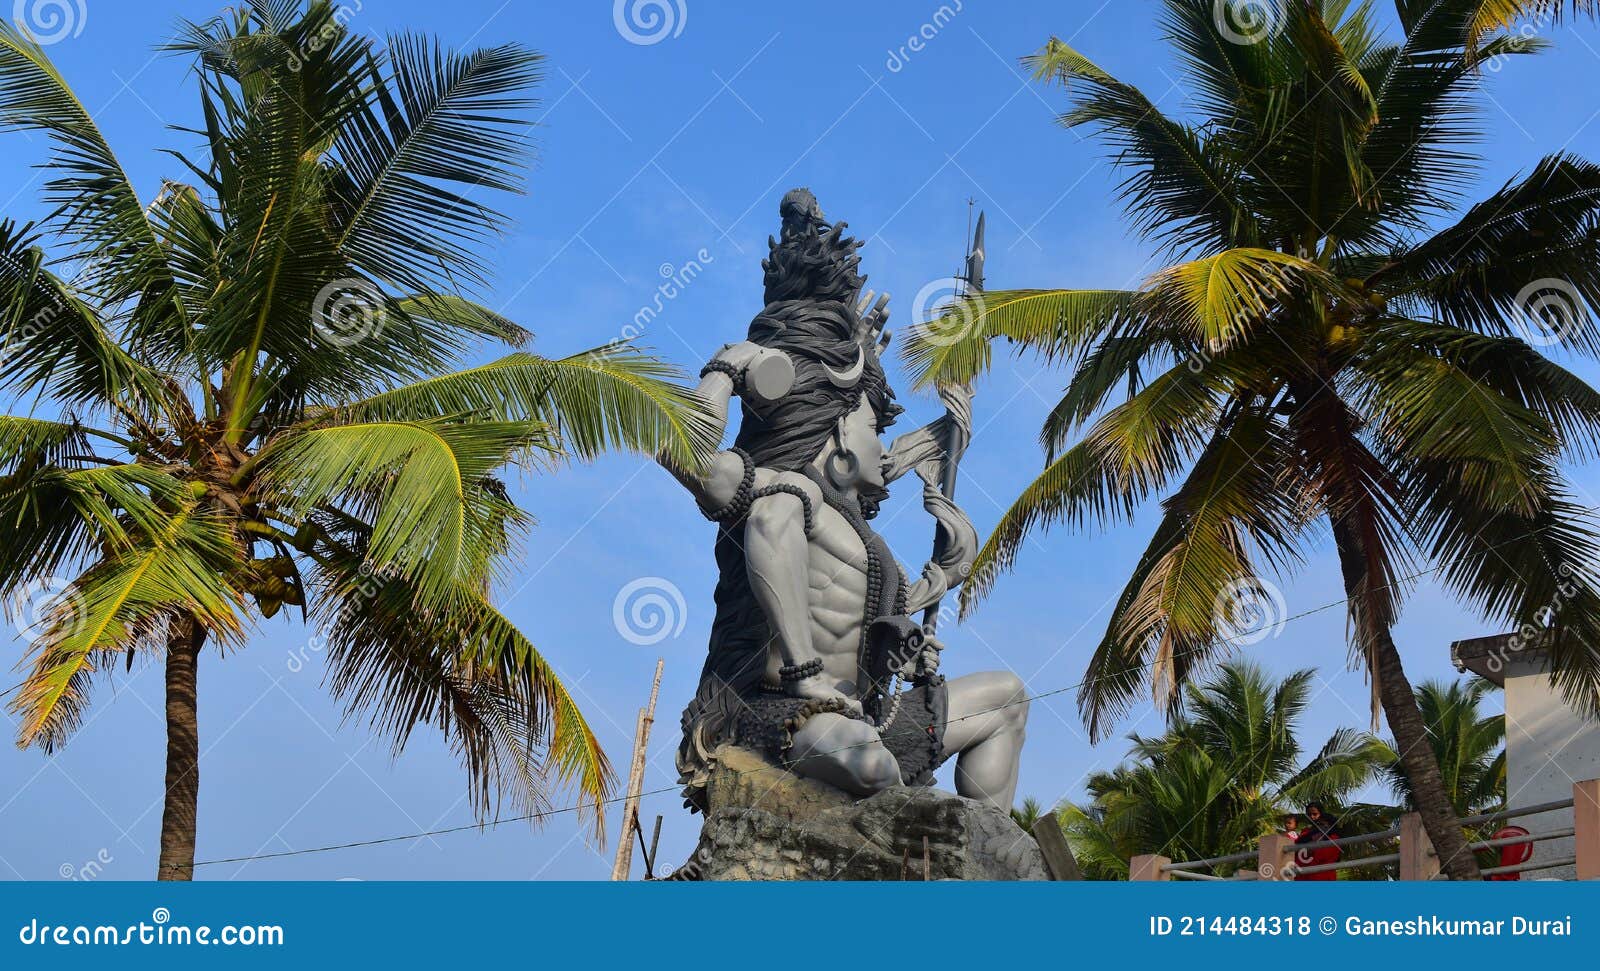 Lord Siva Statue in Azhimala Siva Temple Editorial Stock Photo ...